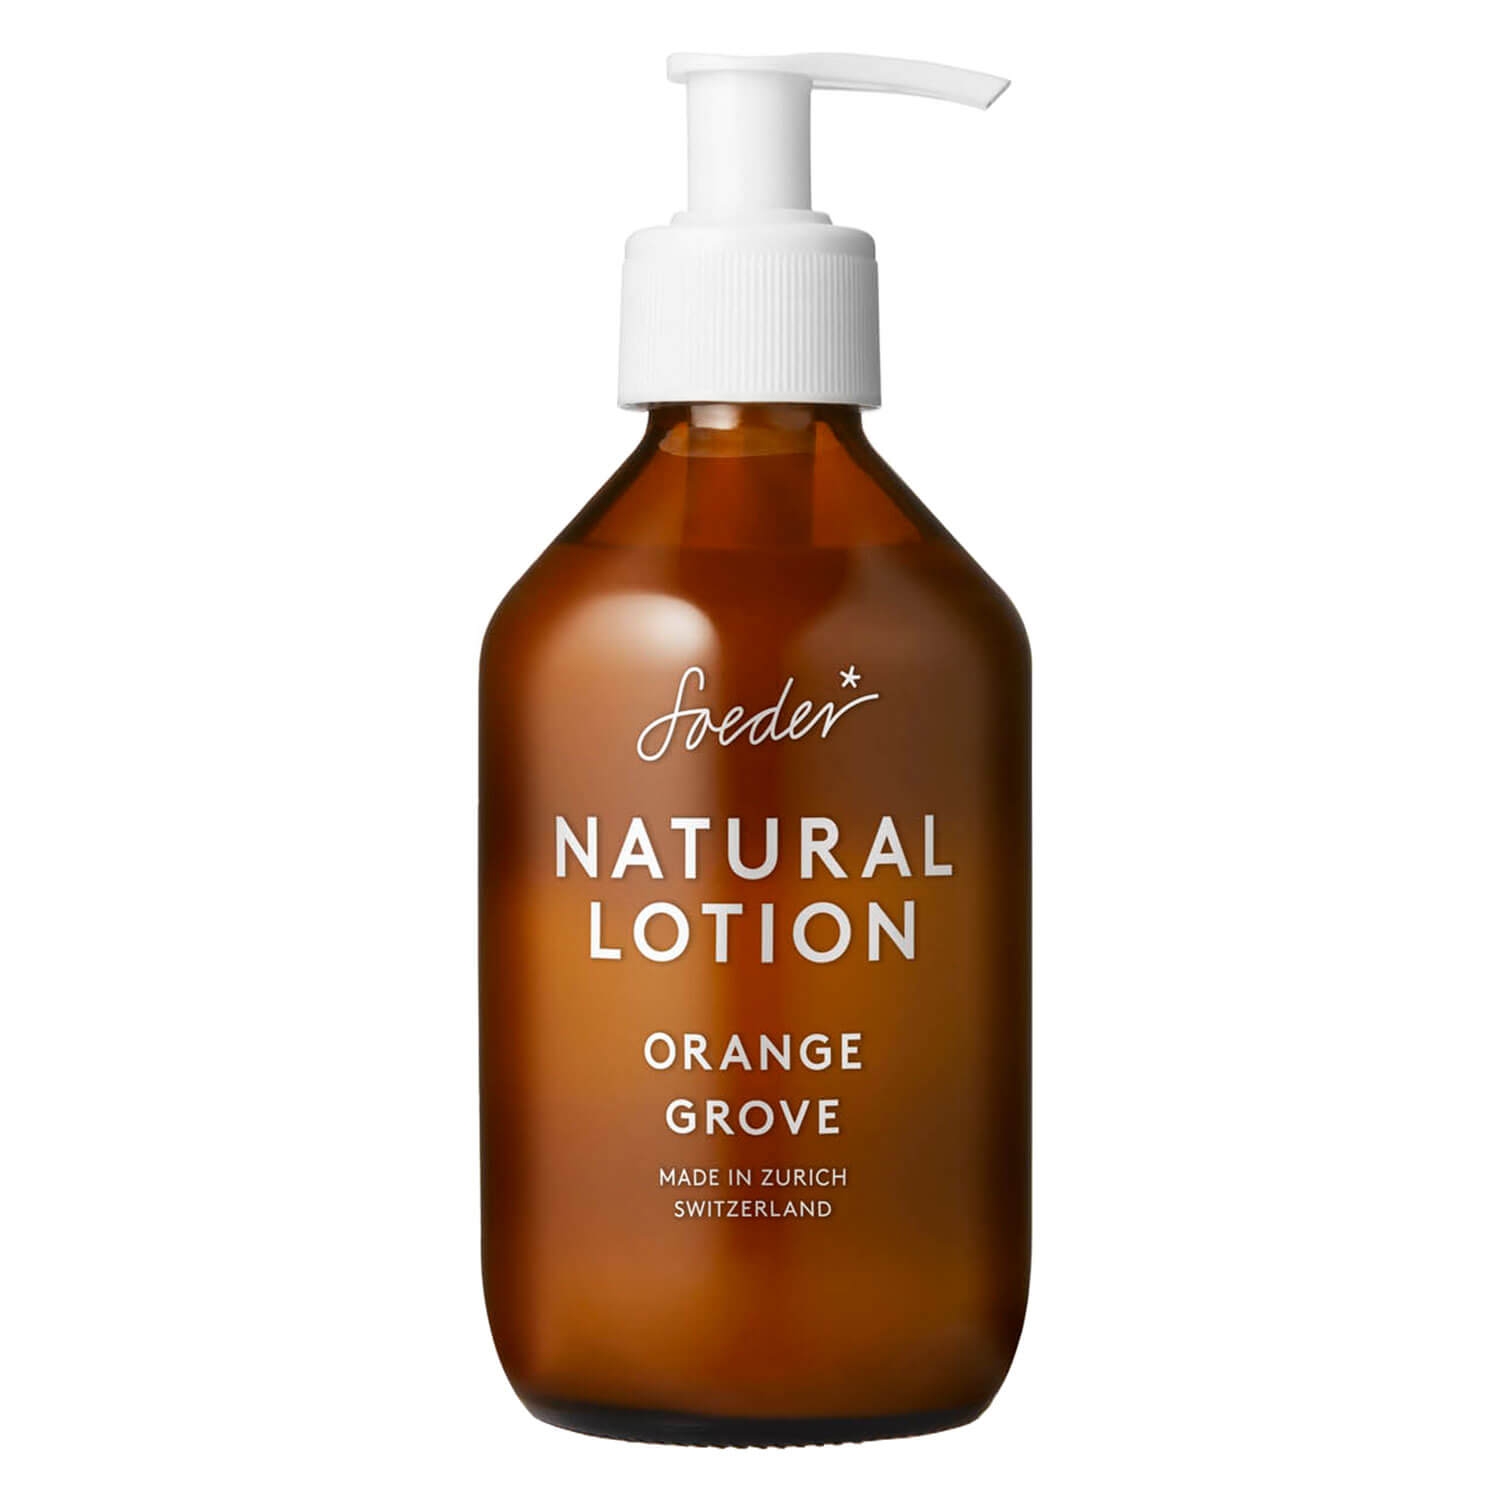 Image du produit de Soeder - Natural Lotion Orange Grove